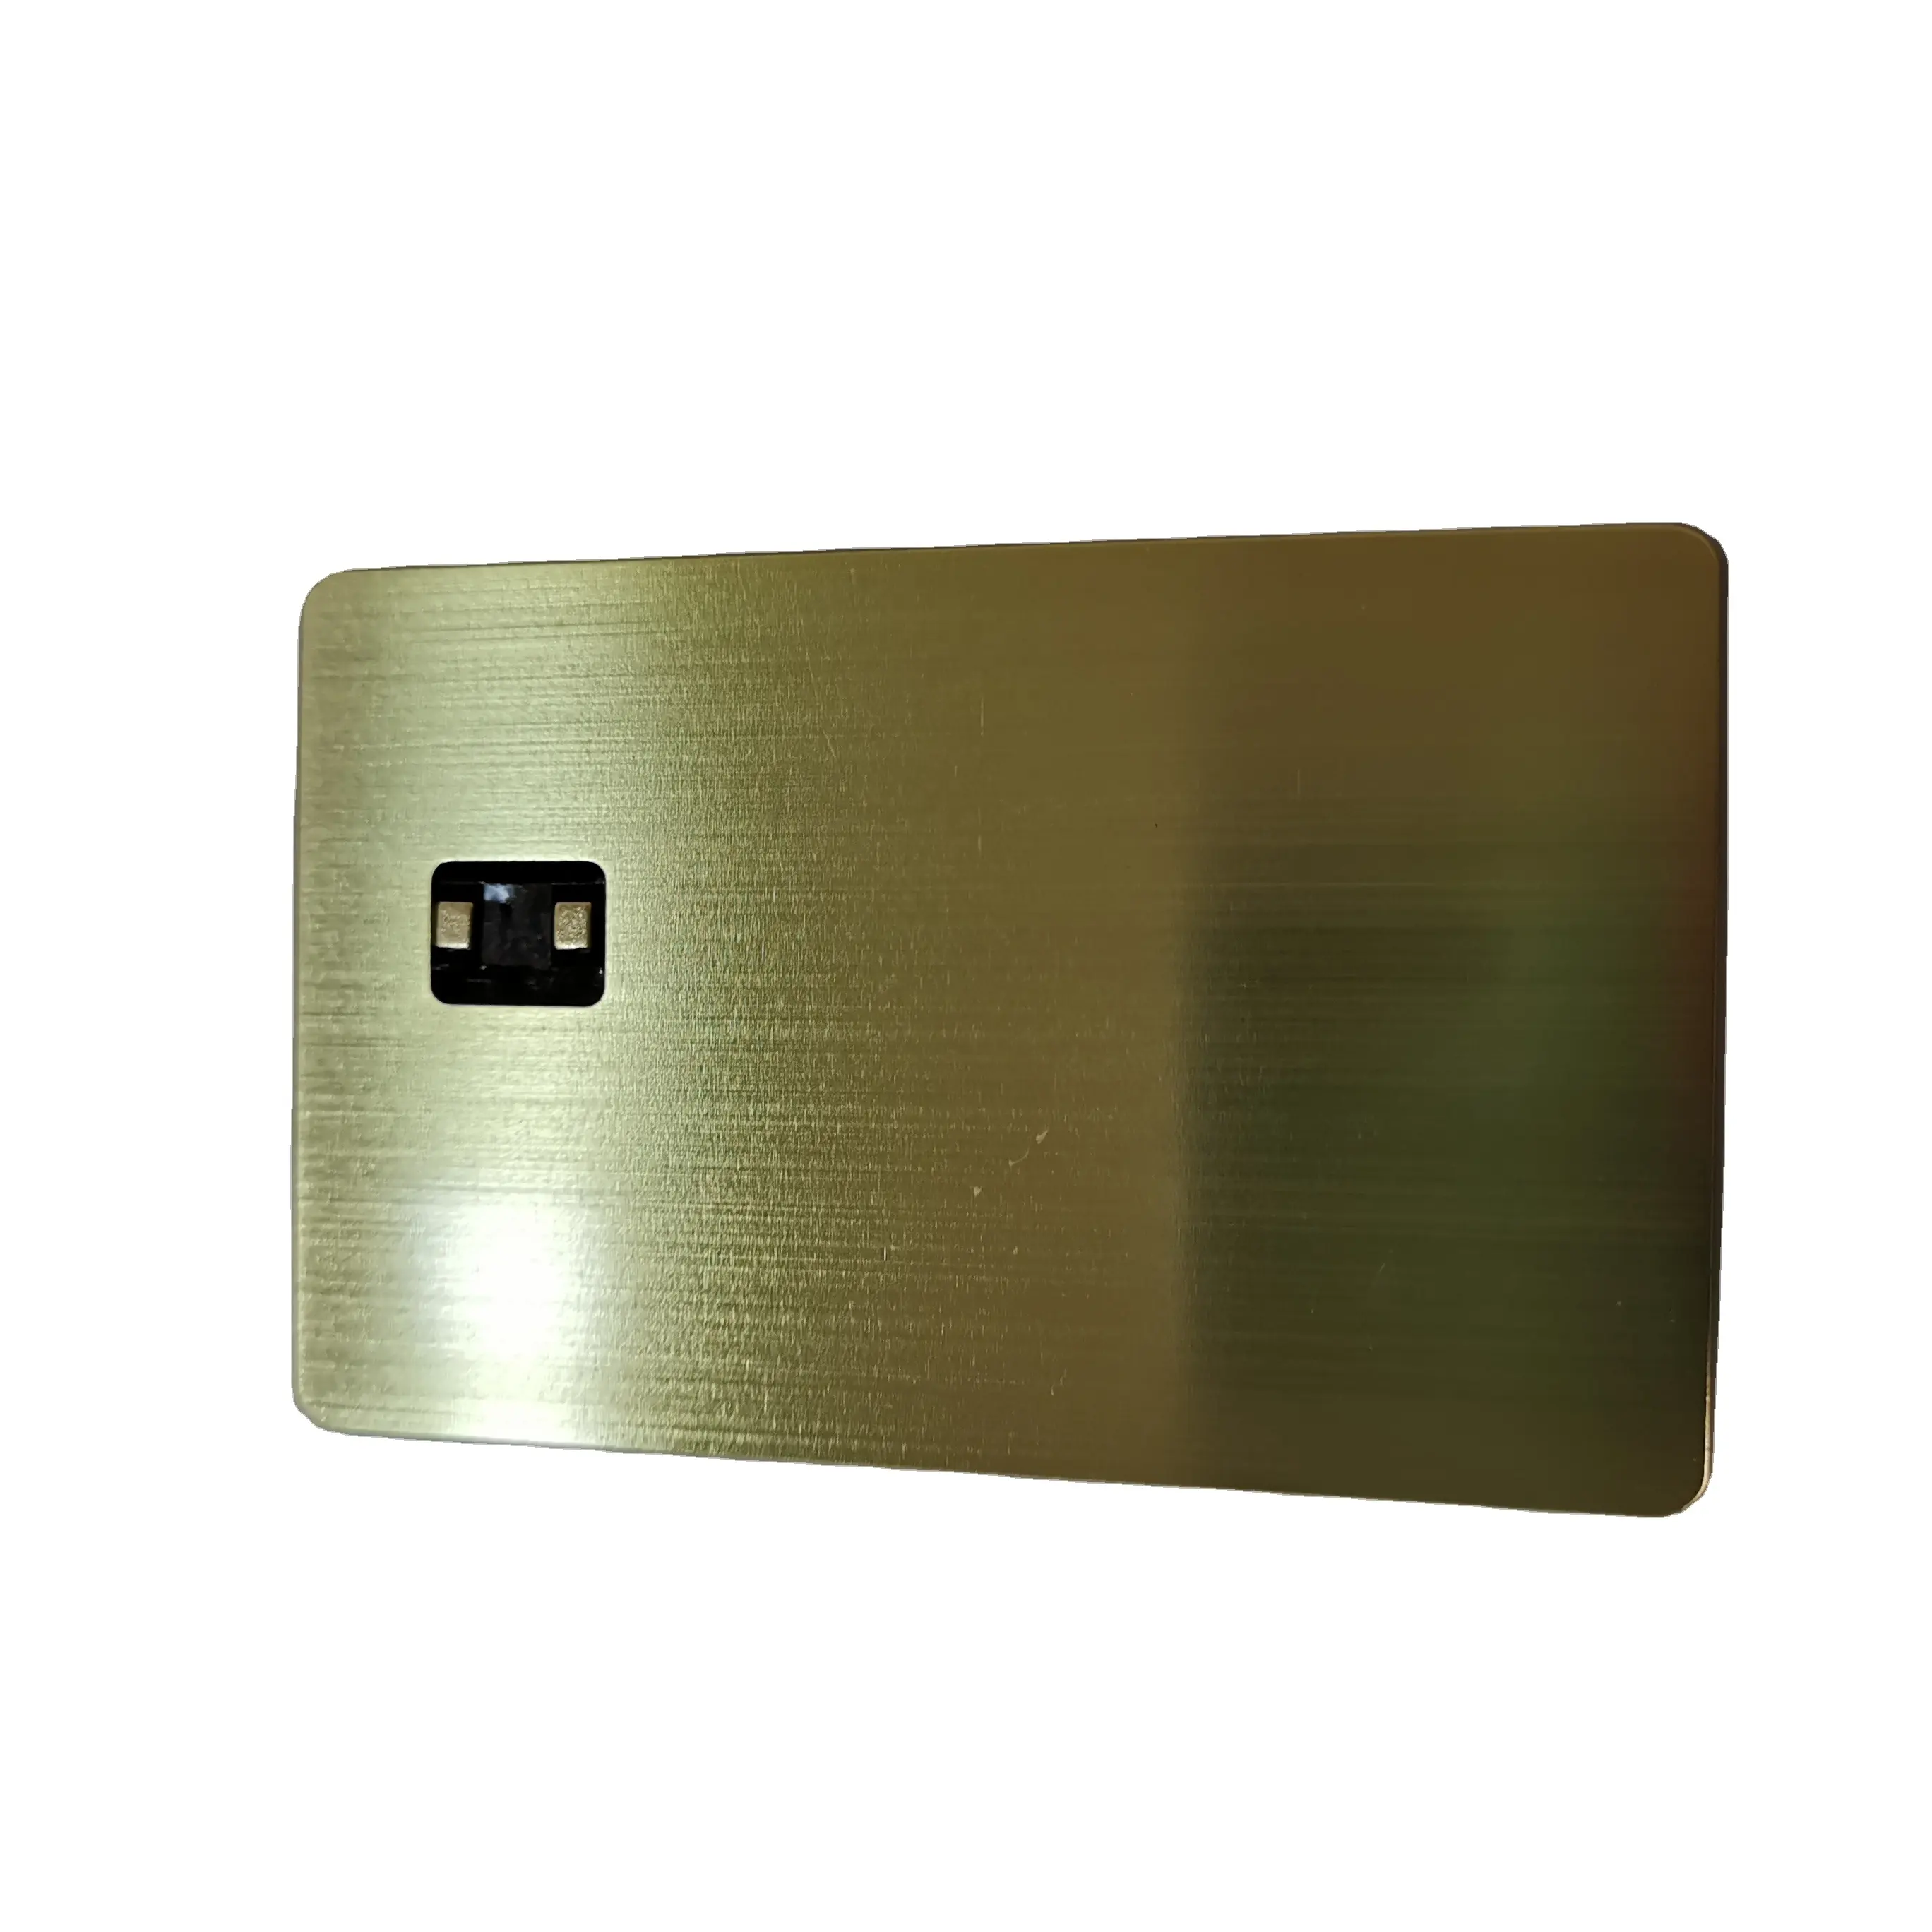 Metall Kreditkarte Metall Debitkarte mit kontaktloser Zahlungs funktion in ATM POS mit Chip Slot und Magnetst reifen verwendet